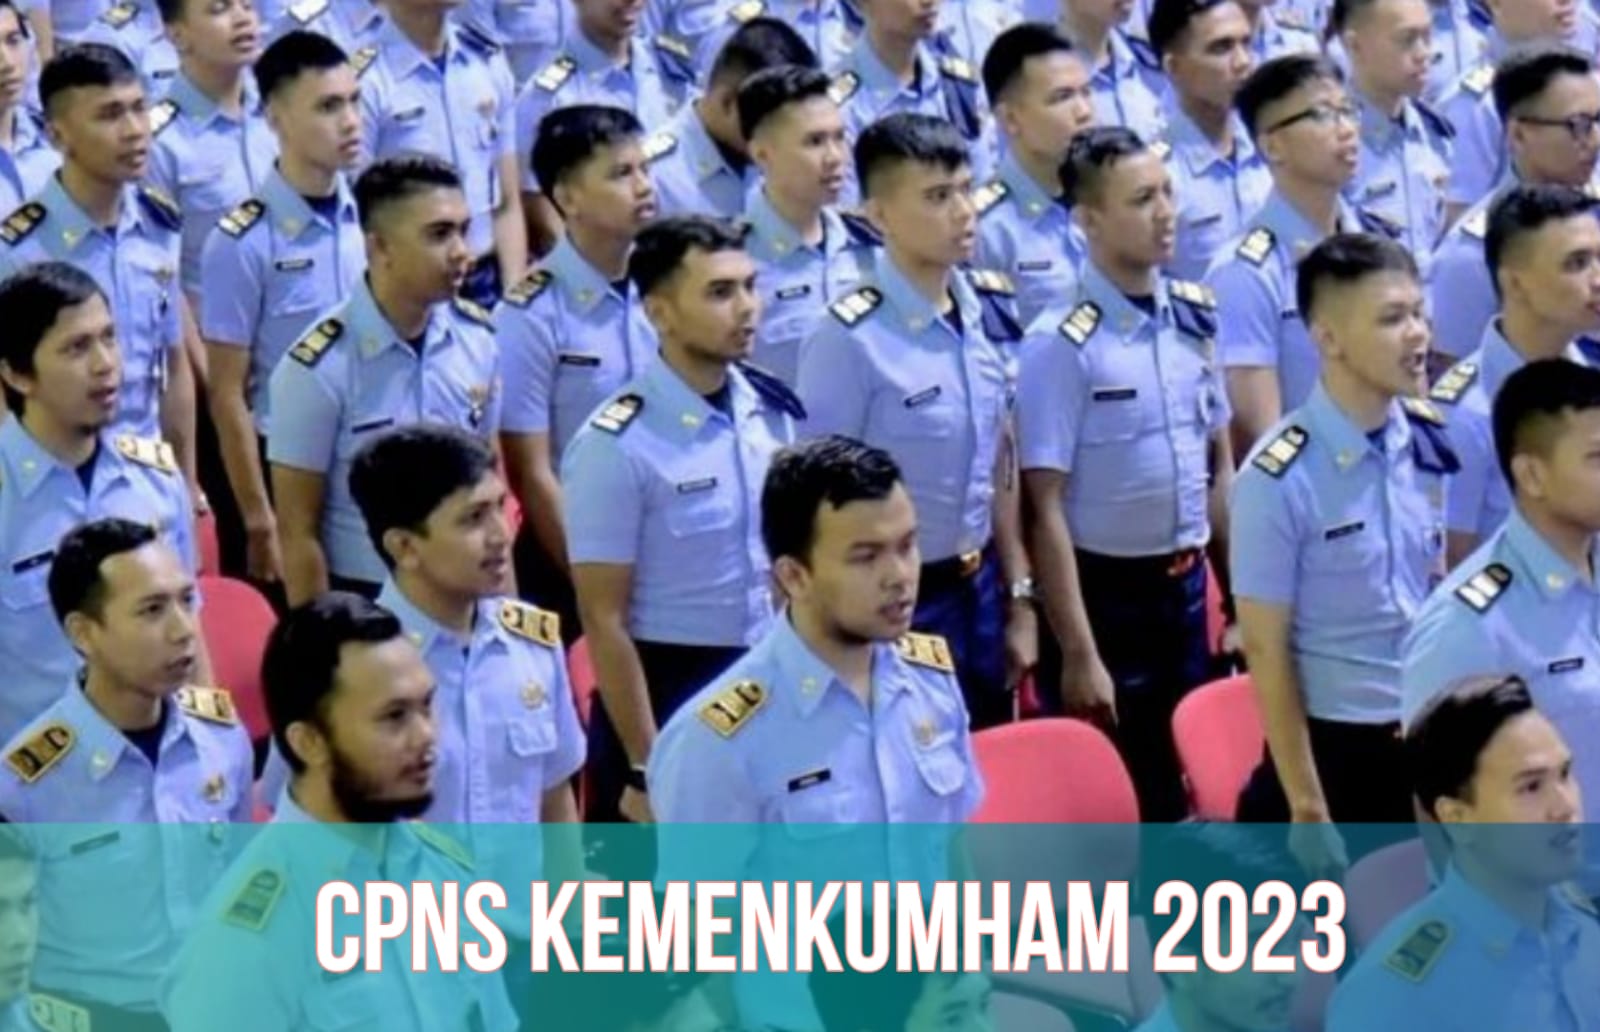 Kemenkumham Buka Formasi CPNS 2023 untuk Lulusan SMA, Simak Link Pendaftaran dan Syaratnya di Sini